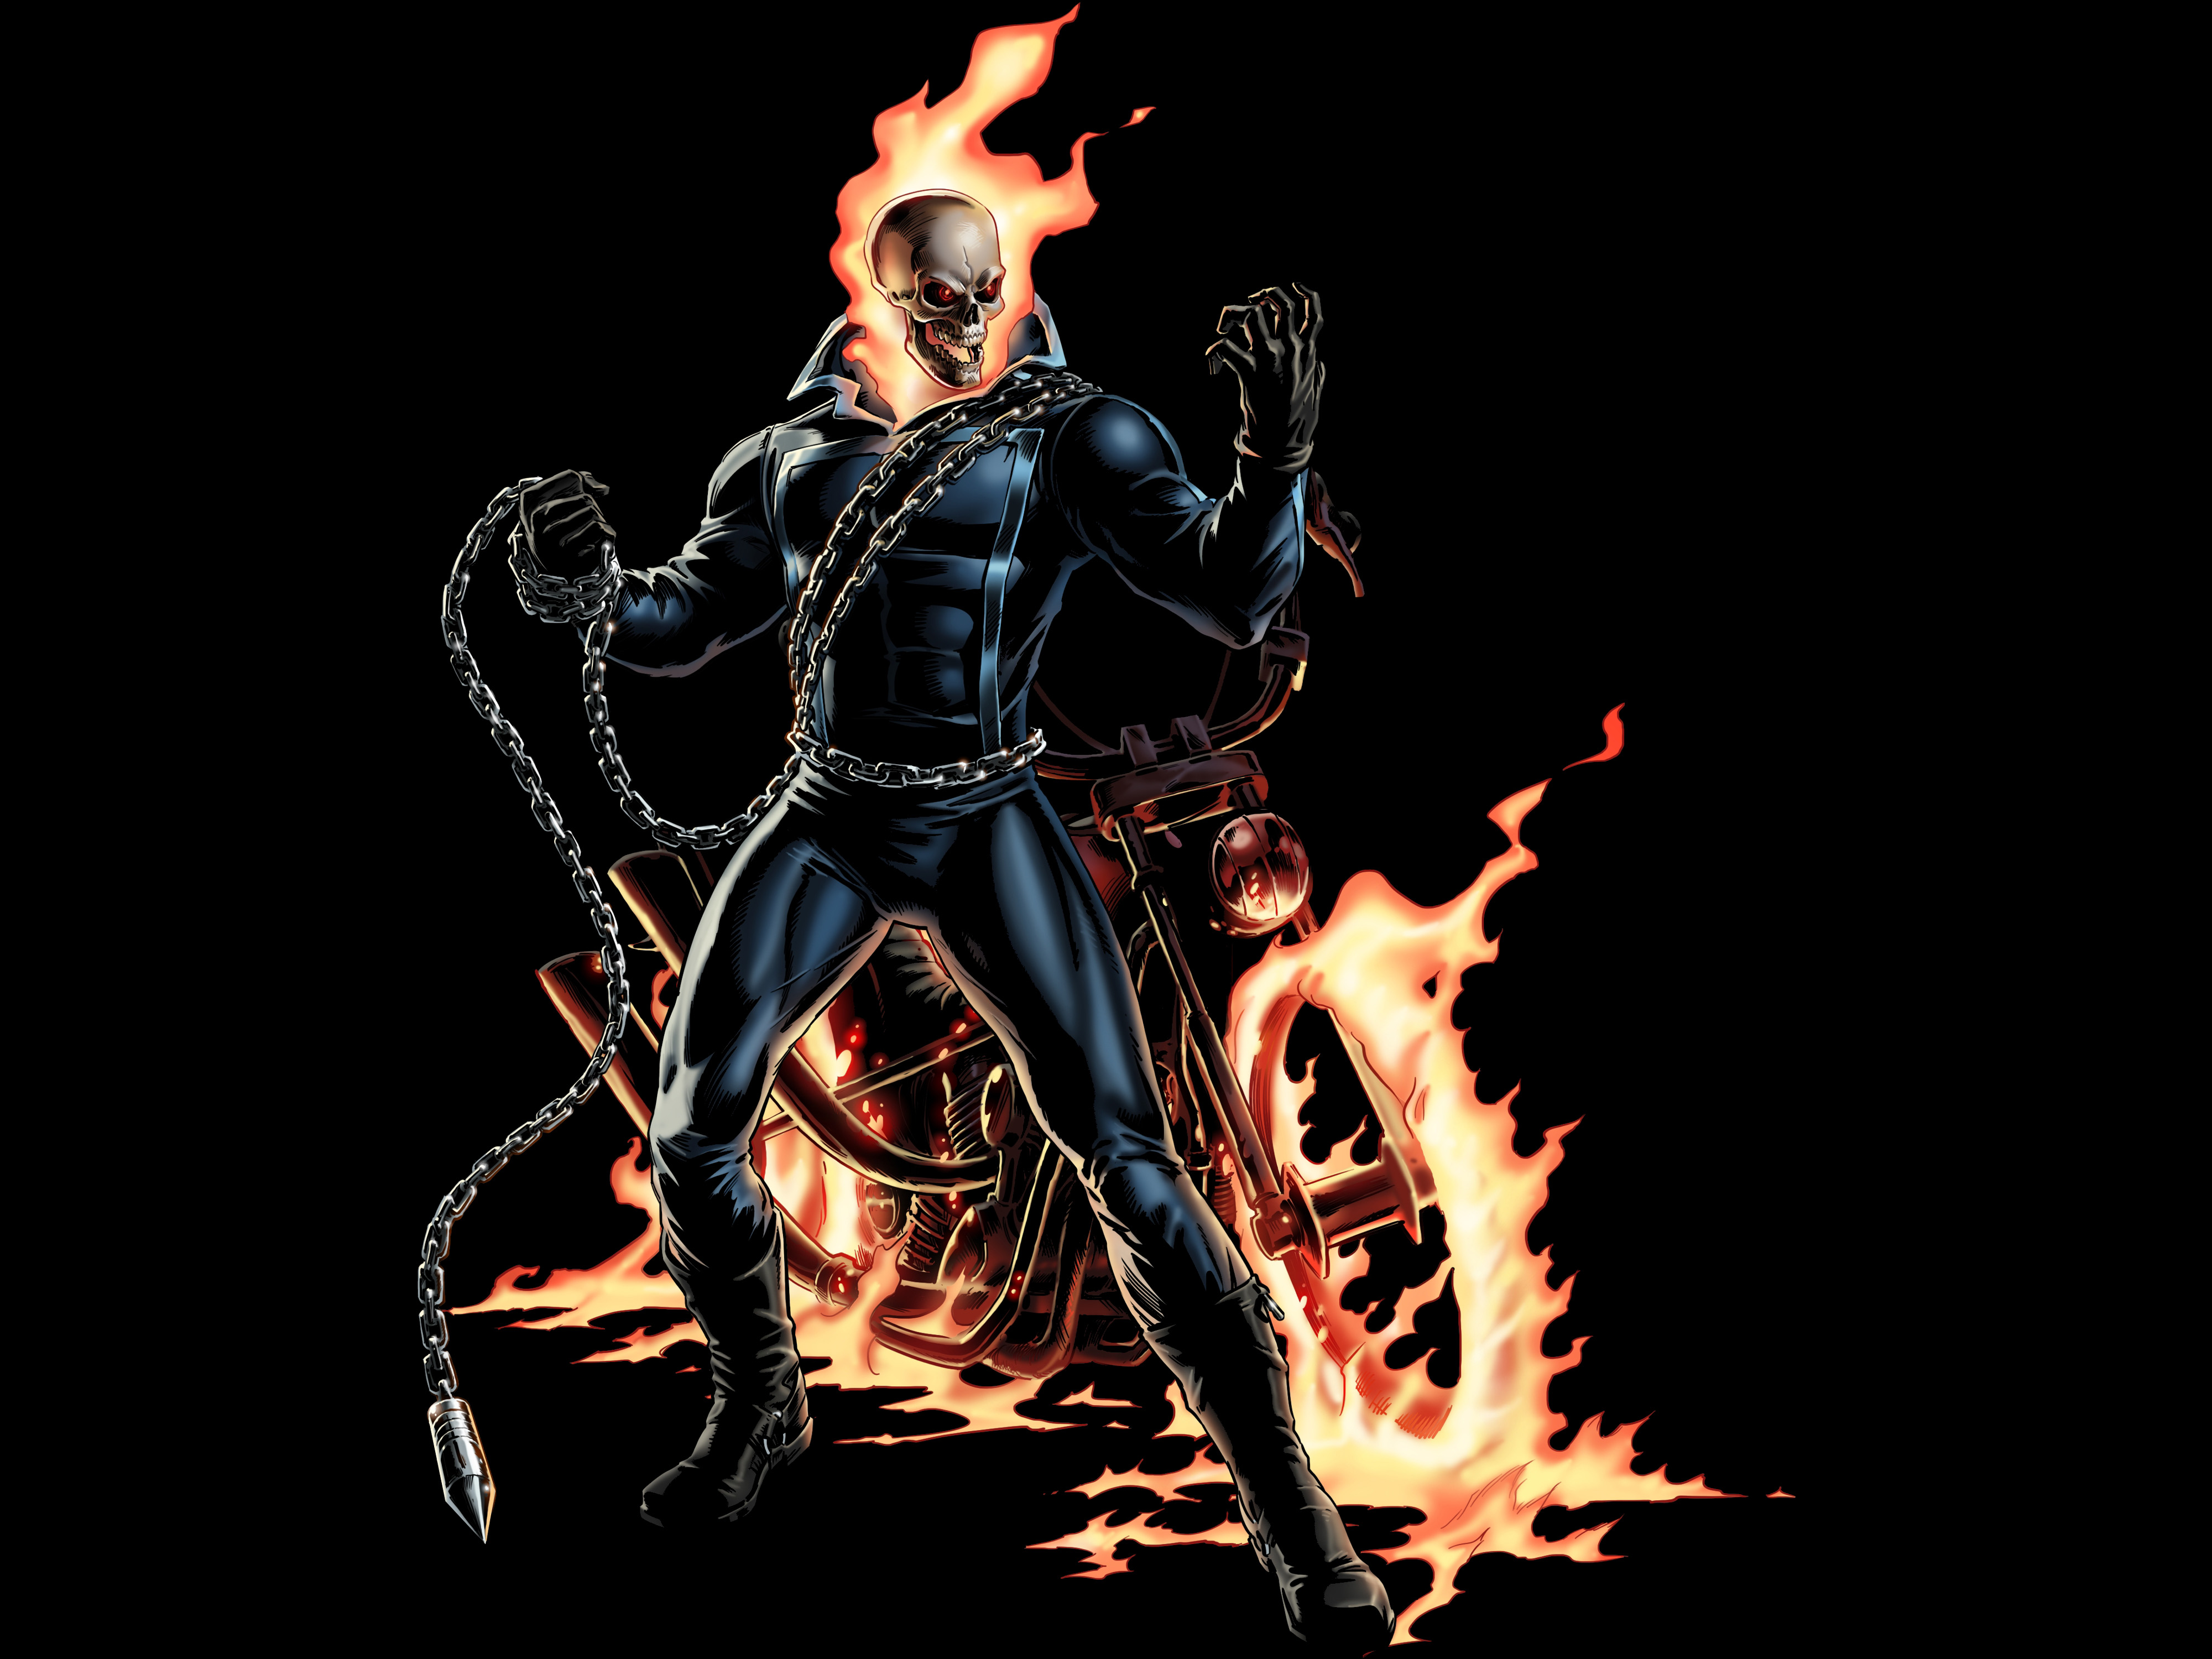 [75+] Ghost Rider Comic Wallpaper on WallpaperSafari